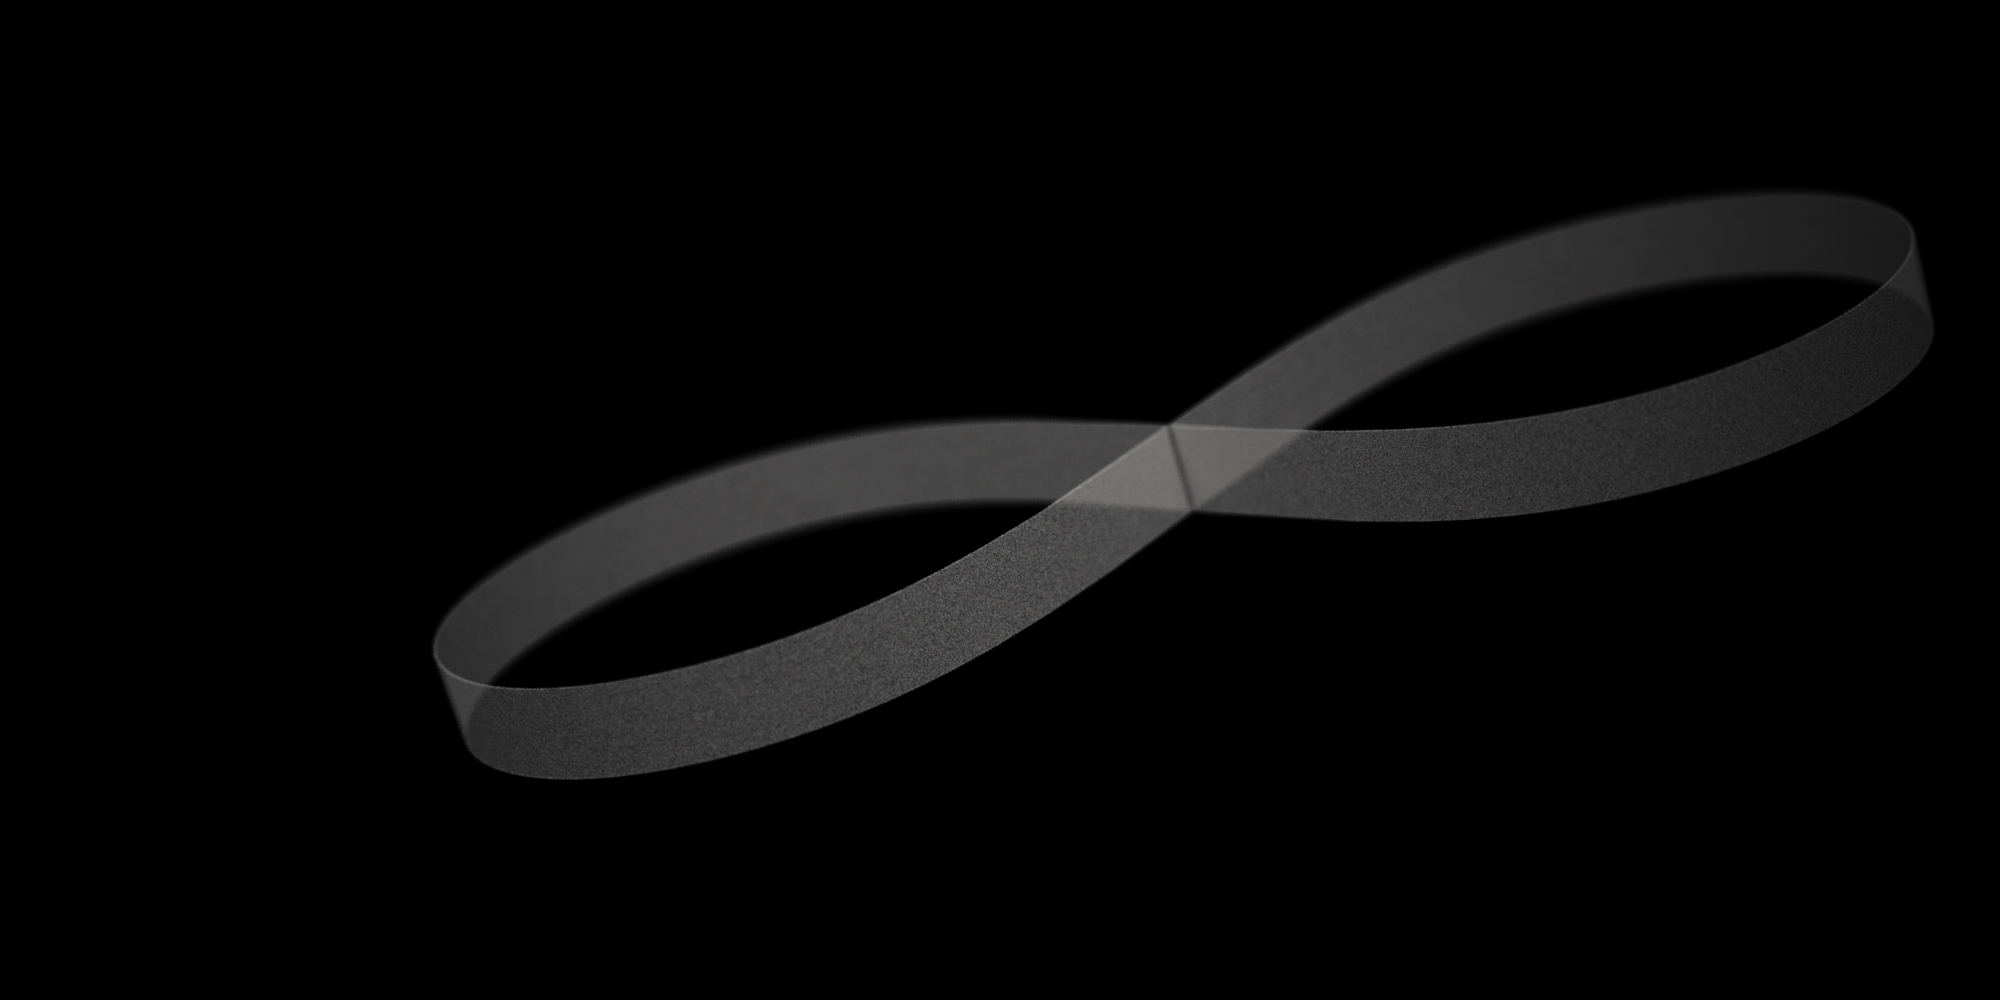 Weisses Unendlichzeichen auf schwarzem Hintergrund, das den kontinuierlichen Fluss von Daten in einem digital transformierten Unternehmen symbolisiert